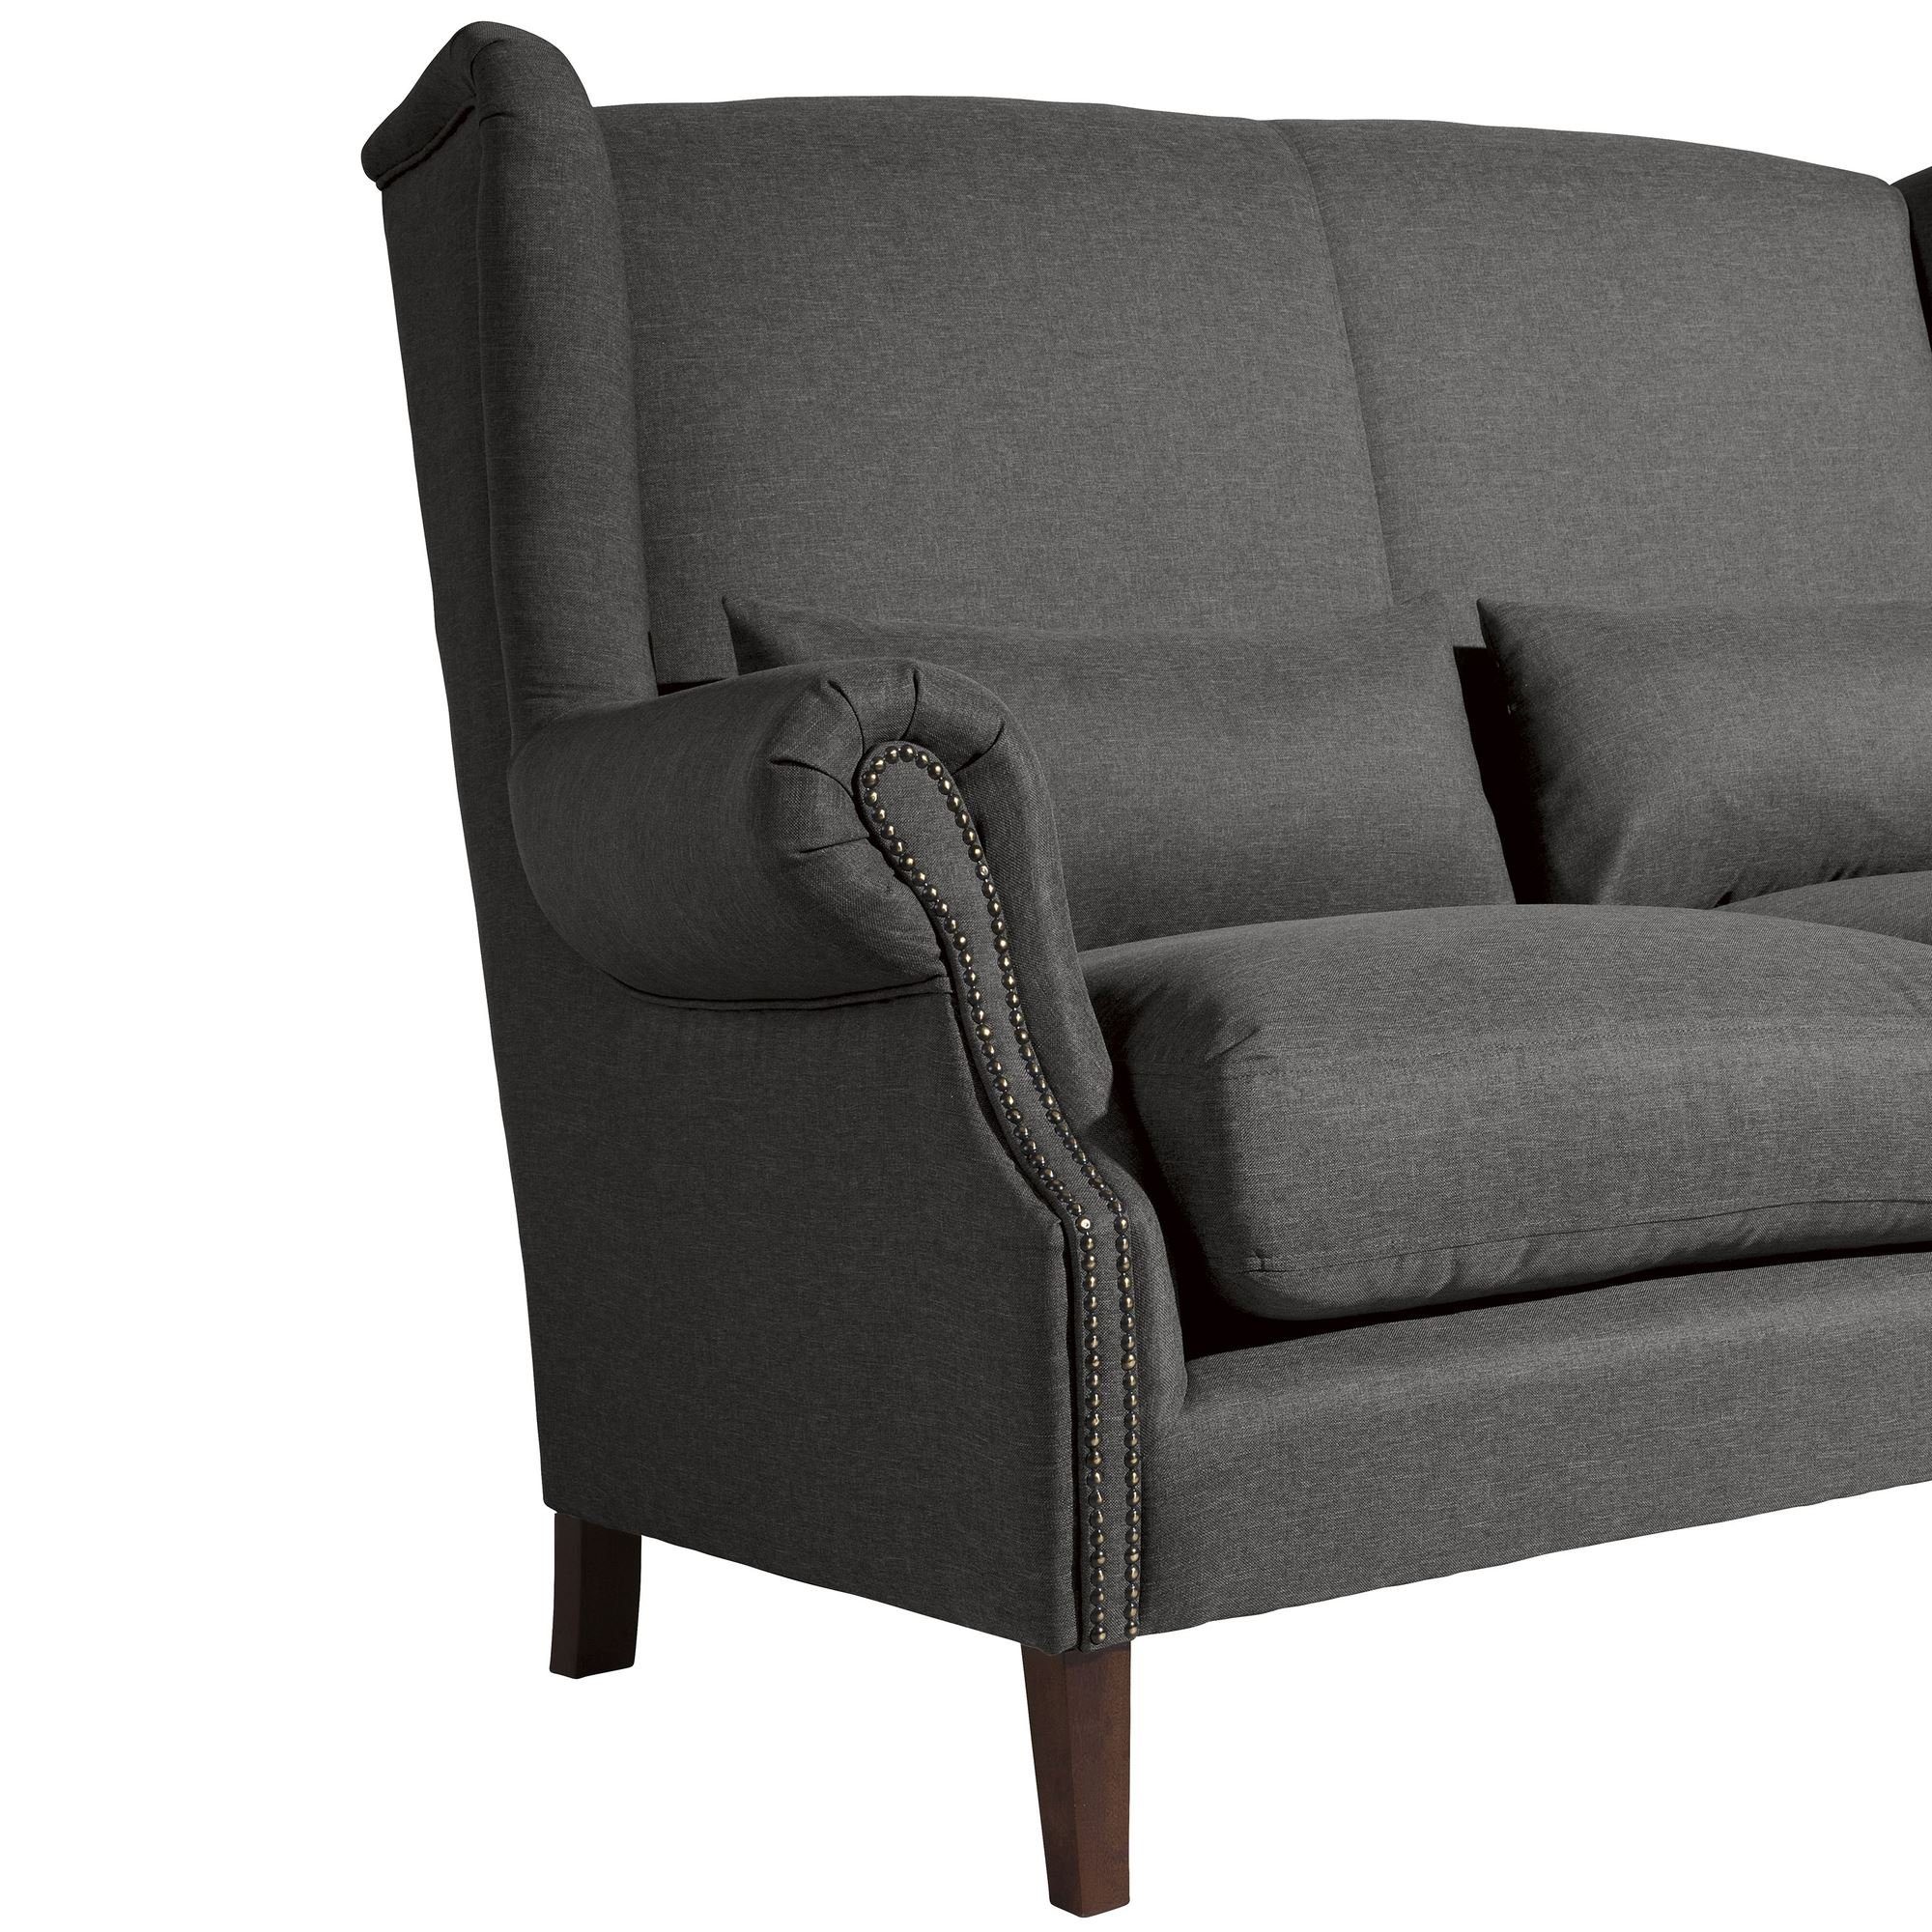 1 aufm Bezug Sofa 2-Sitzer verarbeitet,bequemer inkl. Sitz Versand Kostenlosem Sofa 58 Teile, Buche nussba, Sparpreis hochwertig Kandy Flachgewebe Kessel